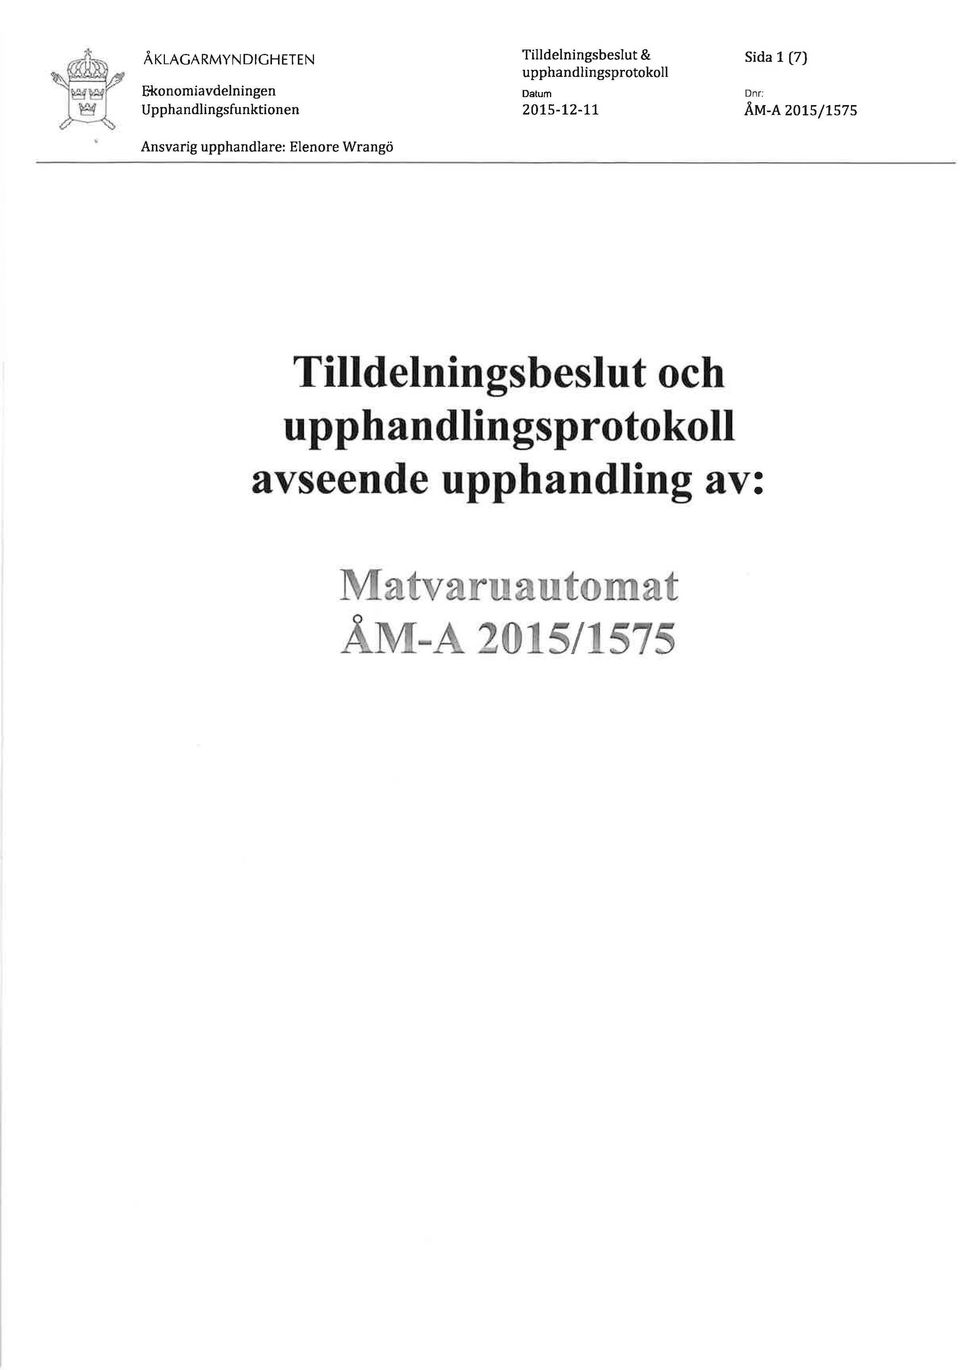 1 (7) ÅM-A 2015/1575 Tilldelningsbeslut och